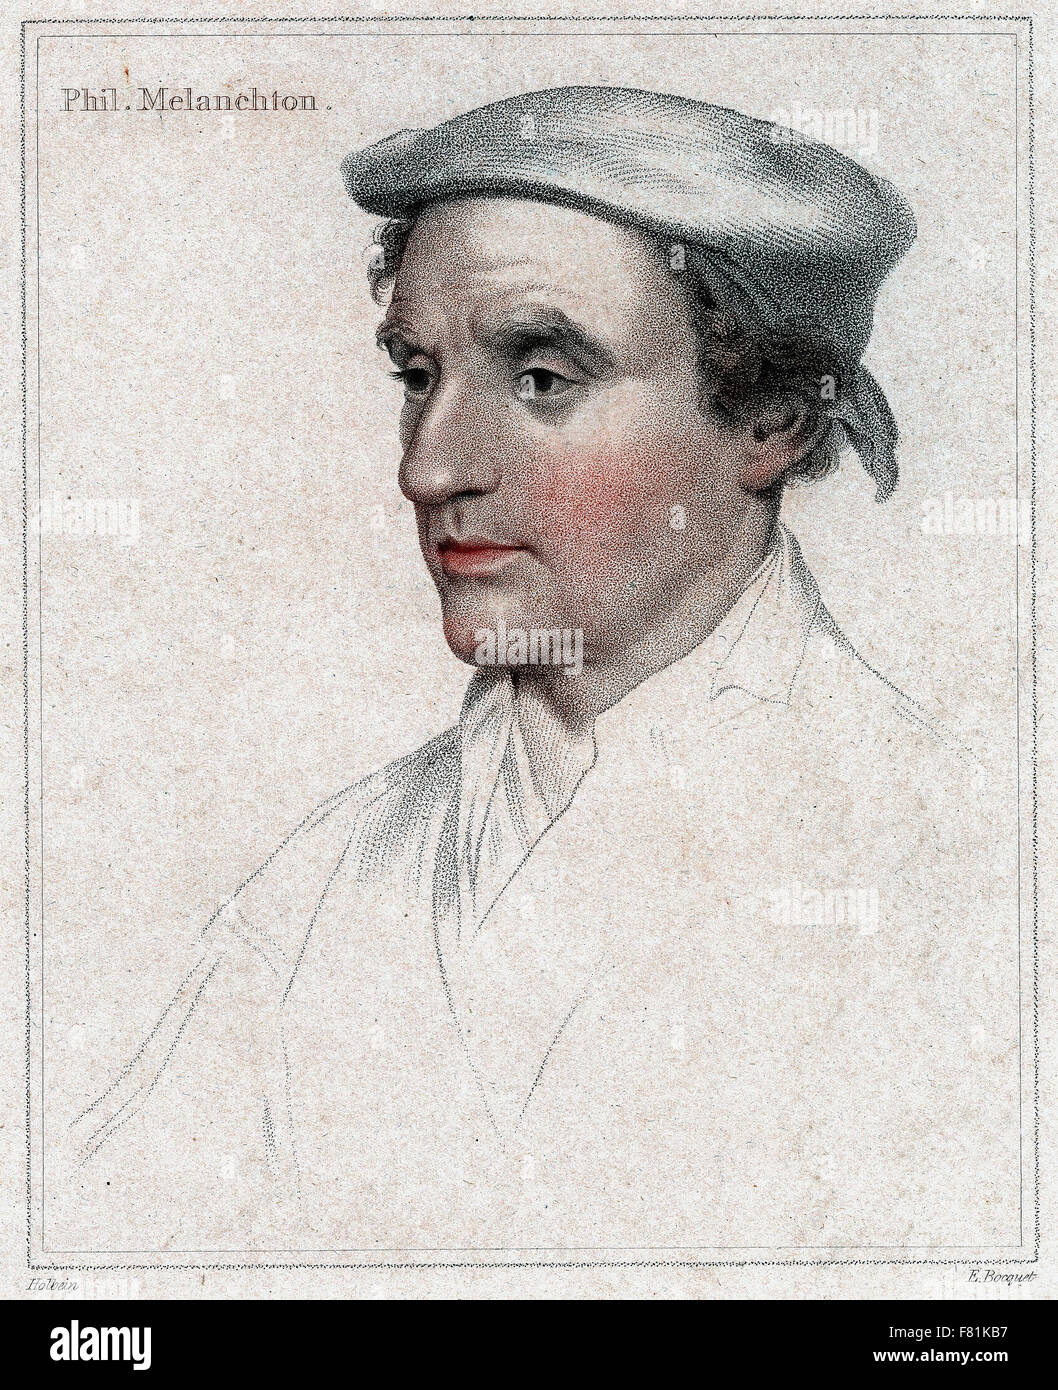 Philipp Melanchthon deutschen protestantischen Reformer - Gravur Stockfoto